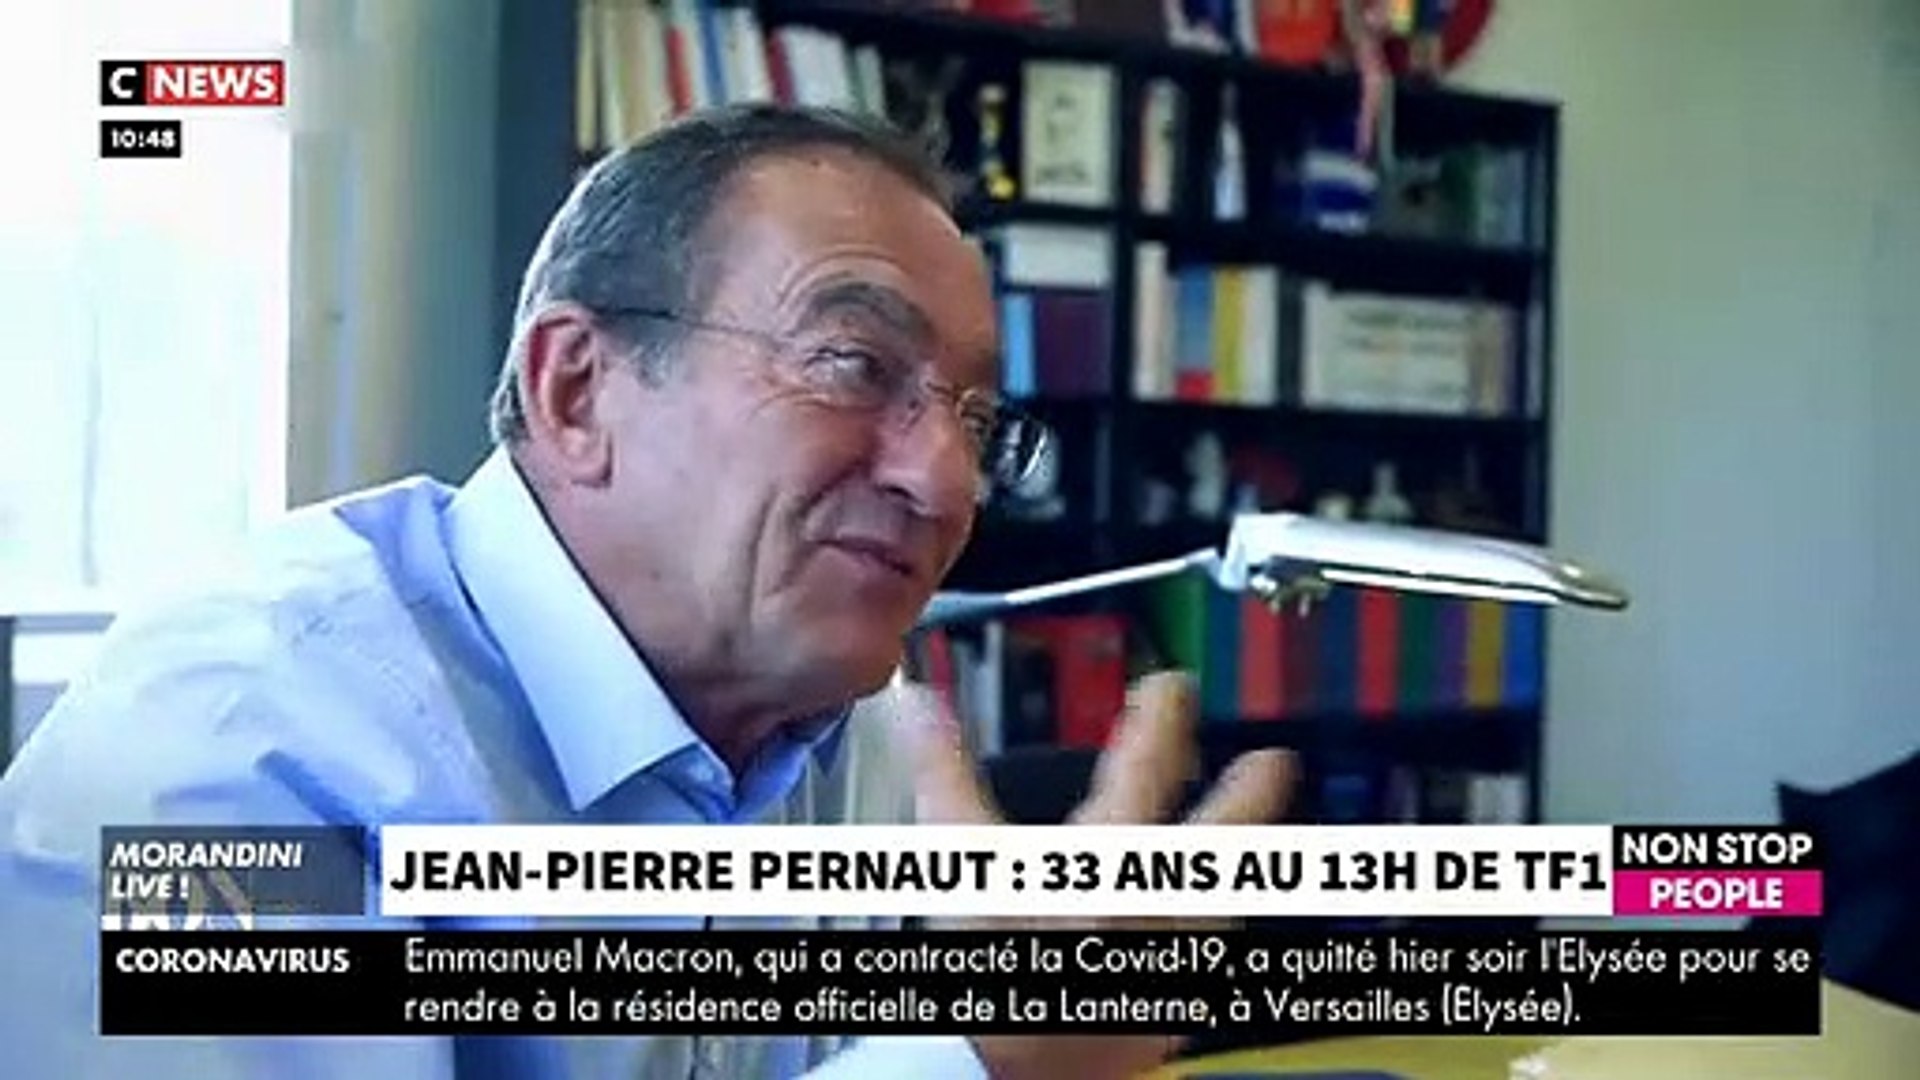 Départ de Jean-Pierre Pernaut: Revoir la page spéciale de "Morandini Live"  ce midi avec Nathalie Marquay-Pernaut très émue - VIDEO - Vidéo Dailymotion